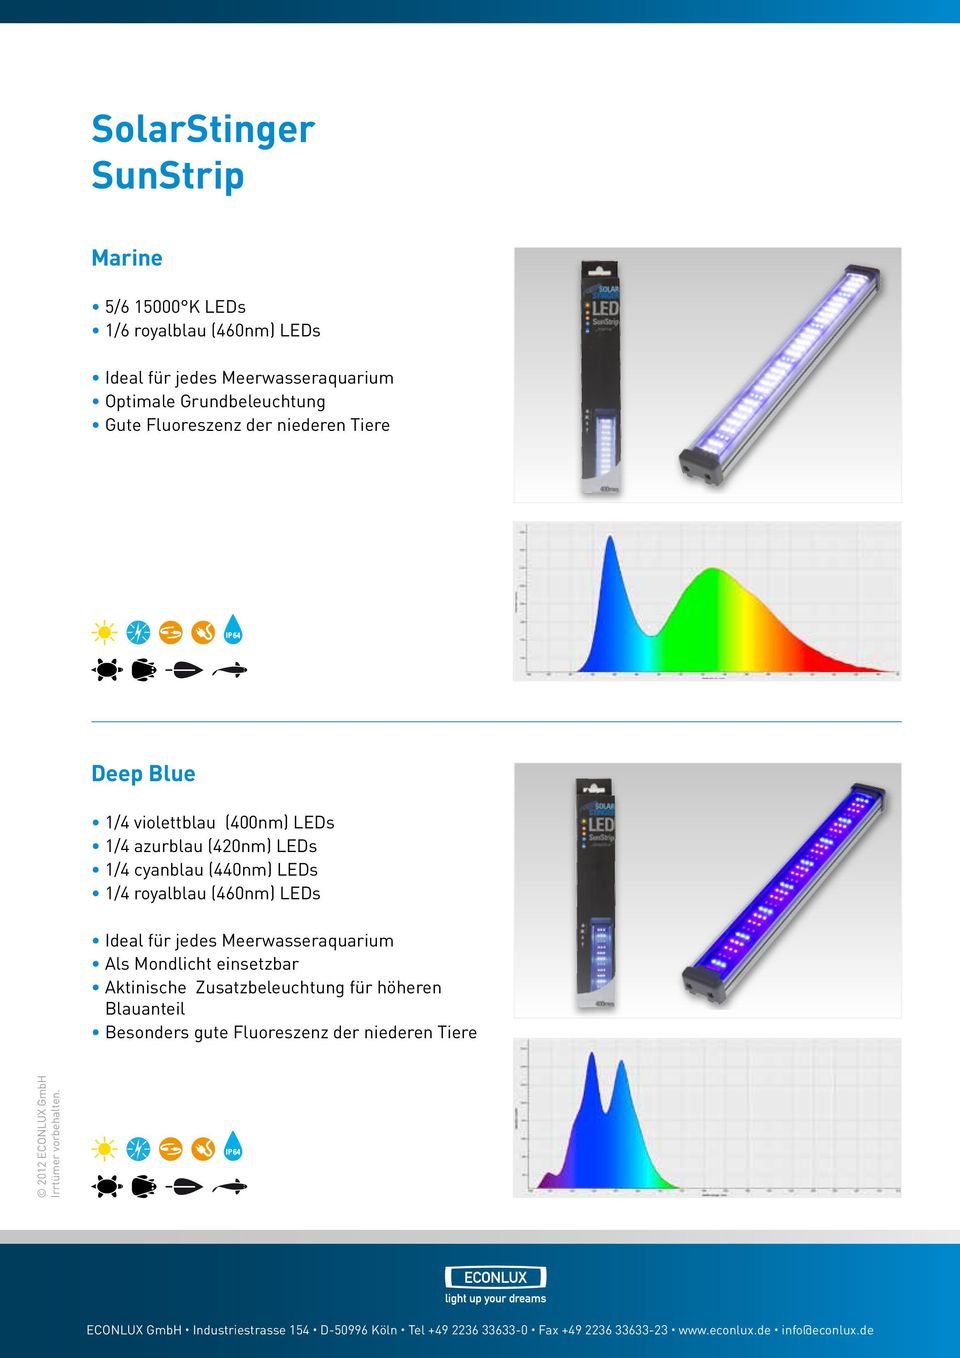 (420nm) LEDs 1/4 cyanblau (440nm) LEDs 1/4 royalblau (460nm) LEDs Ideal für jedes Meerwasseraquarium Als